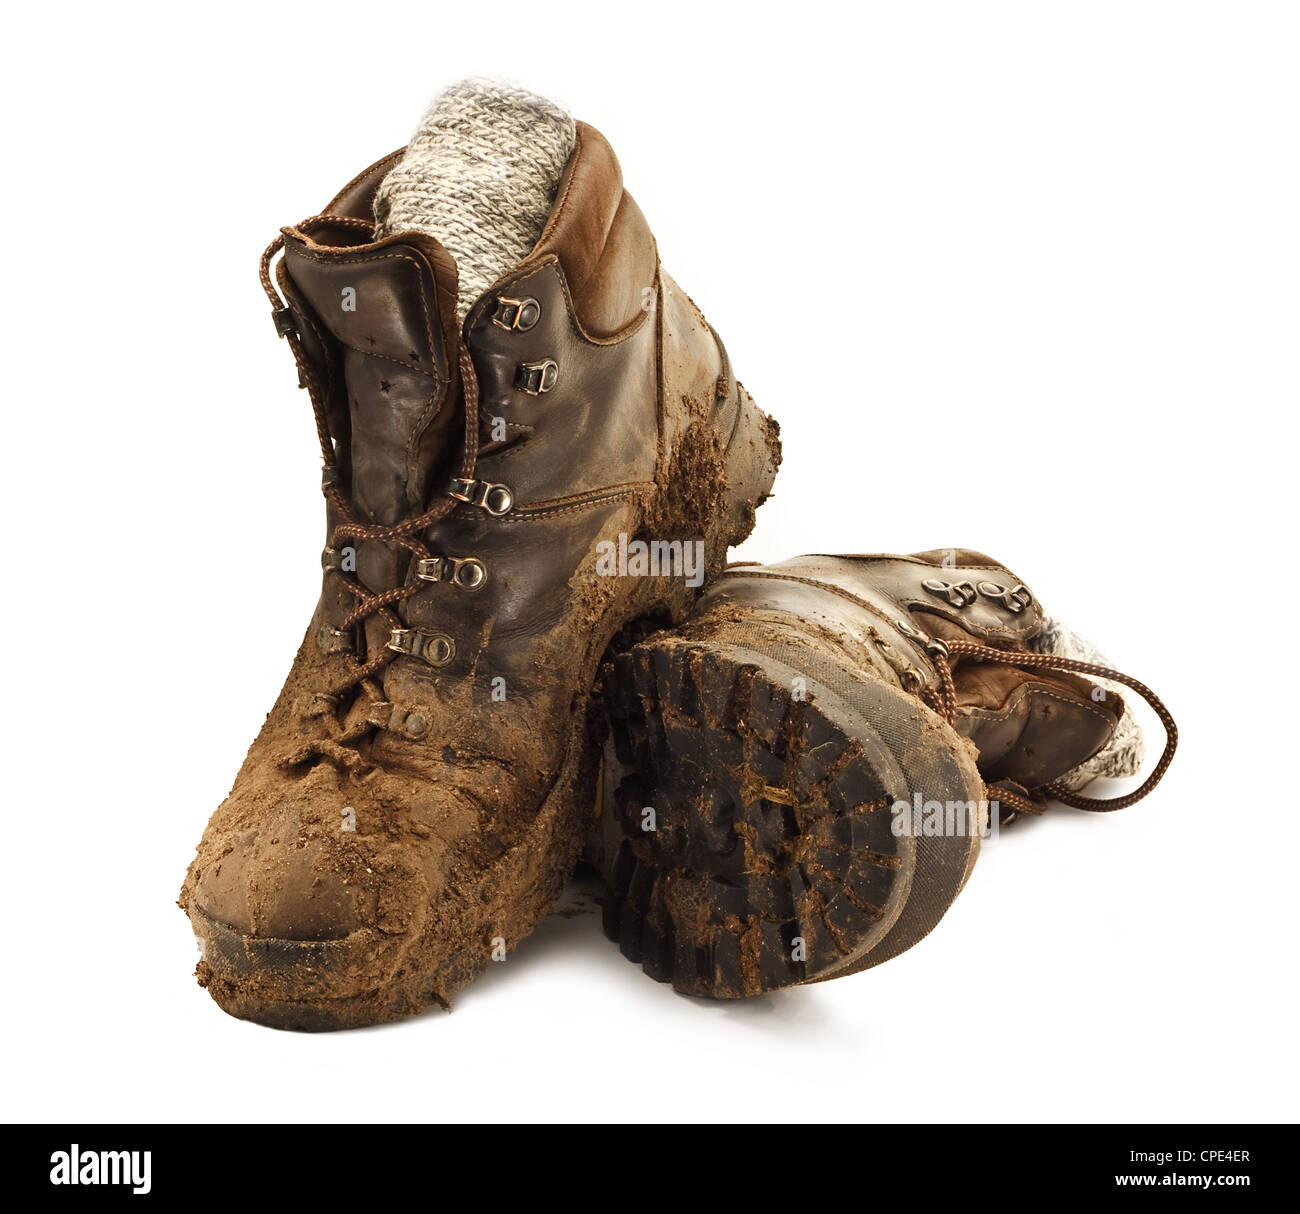 Paire de chaussures de randonnée marron sale dans la boue agglutinée isolé sur un fond blanc Banque D'Images